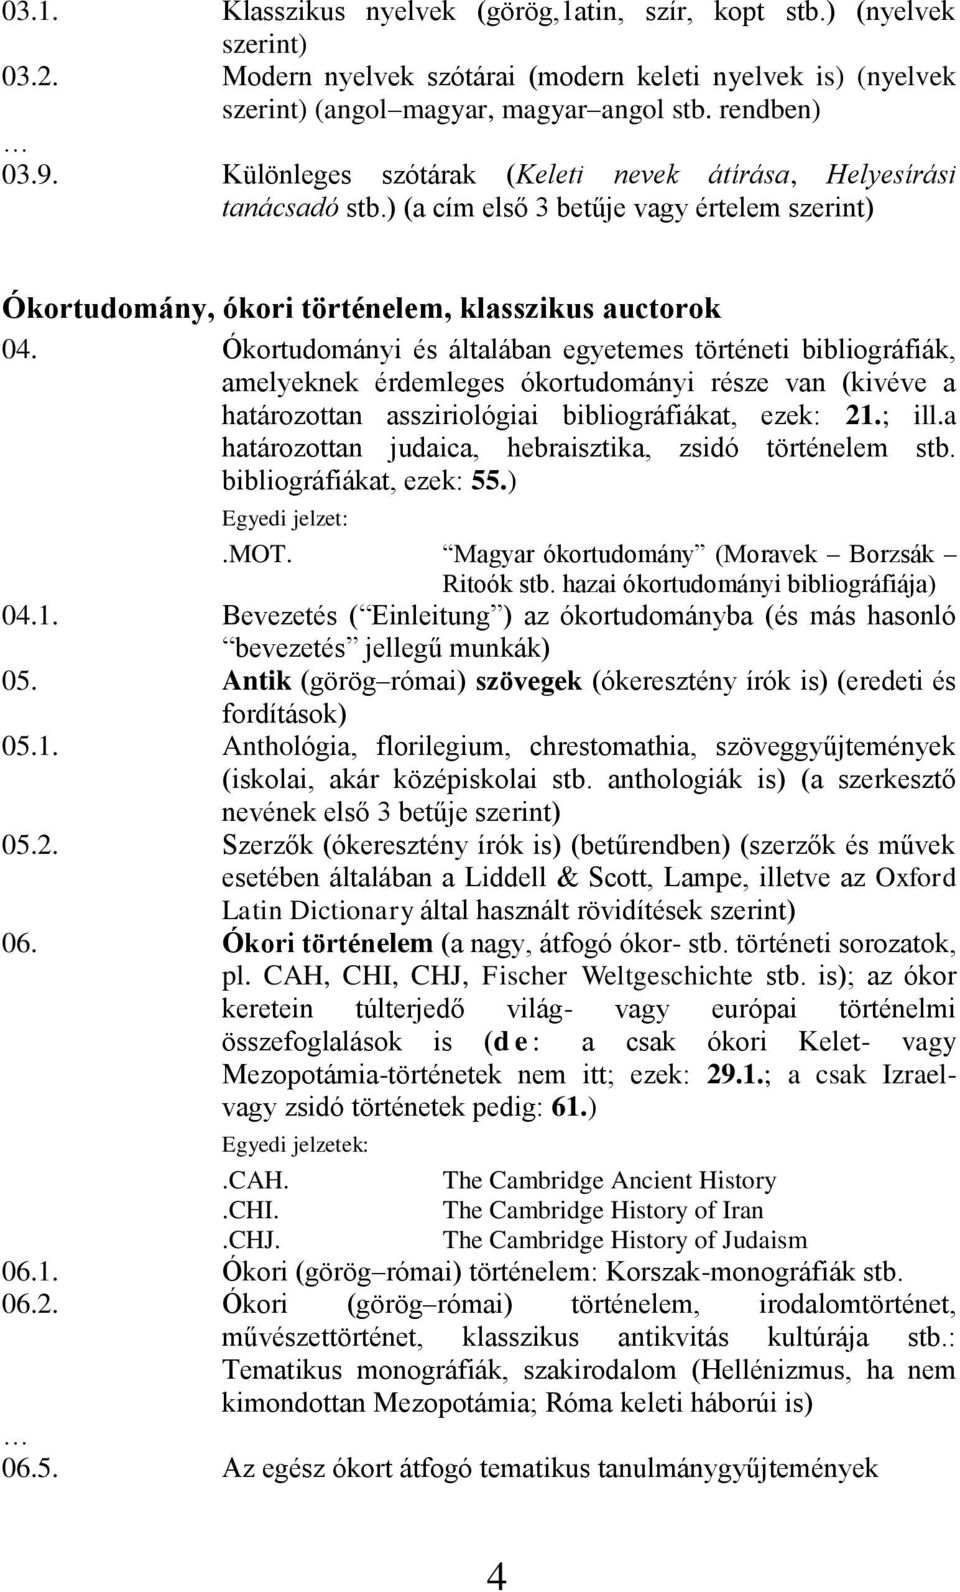 Ókortudományi és általában egyetemes történeti bibliográfiák, amelyeknek érdemleges ókortudományi része van (kivéve a határozottan assziriológiai bibliográfiákat, ezek: 21.; ill.